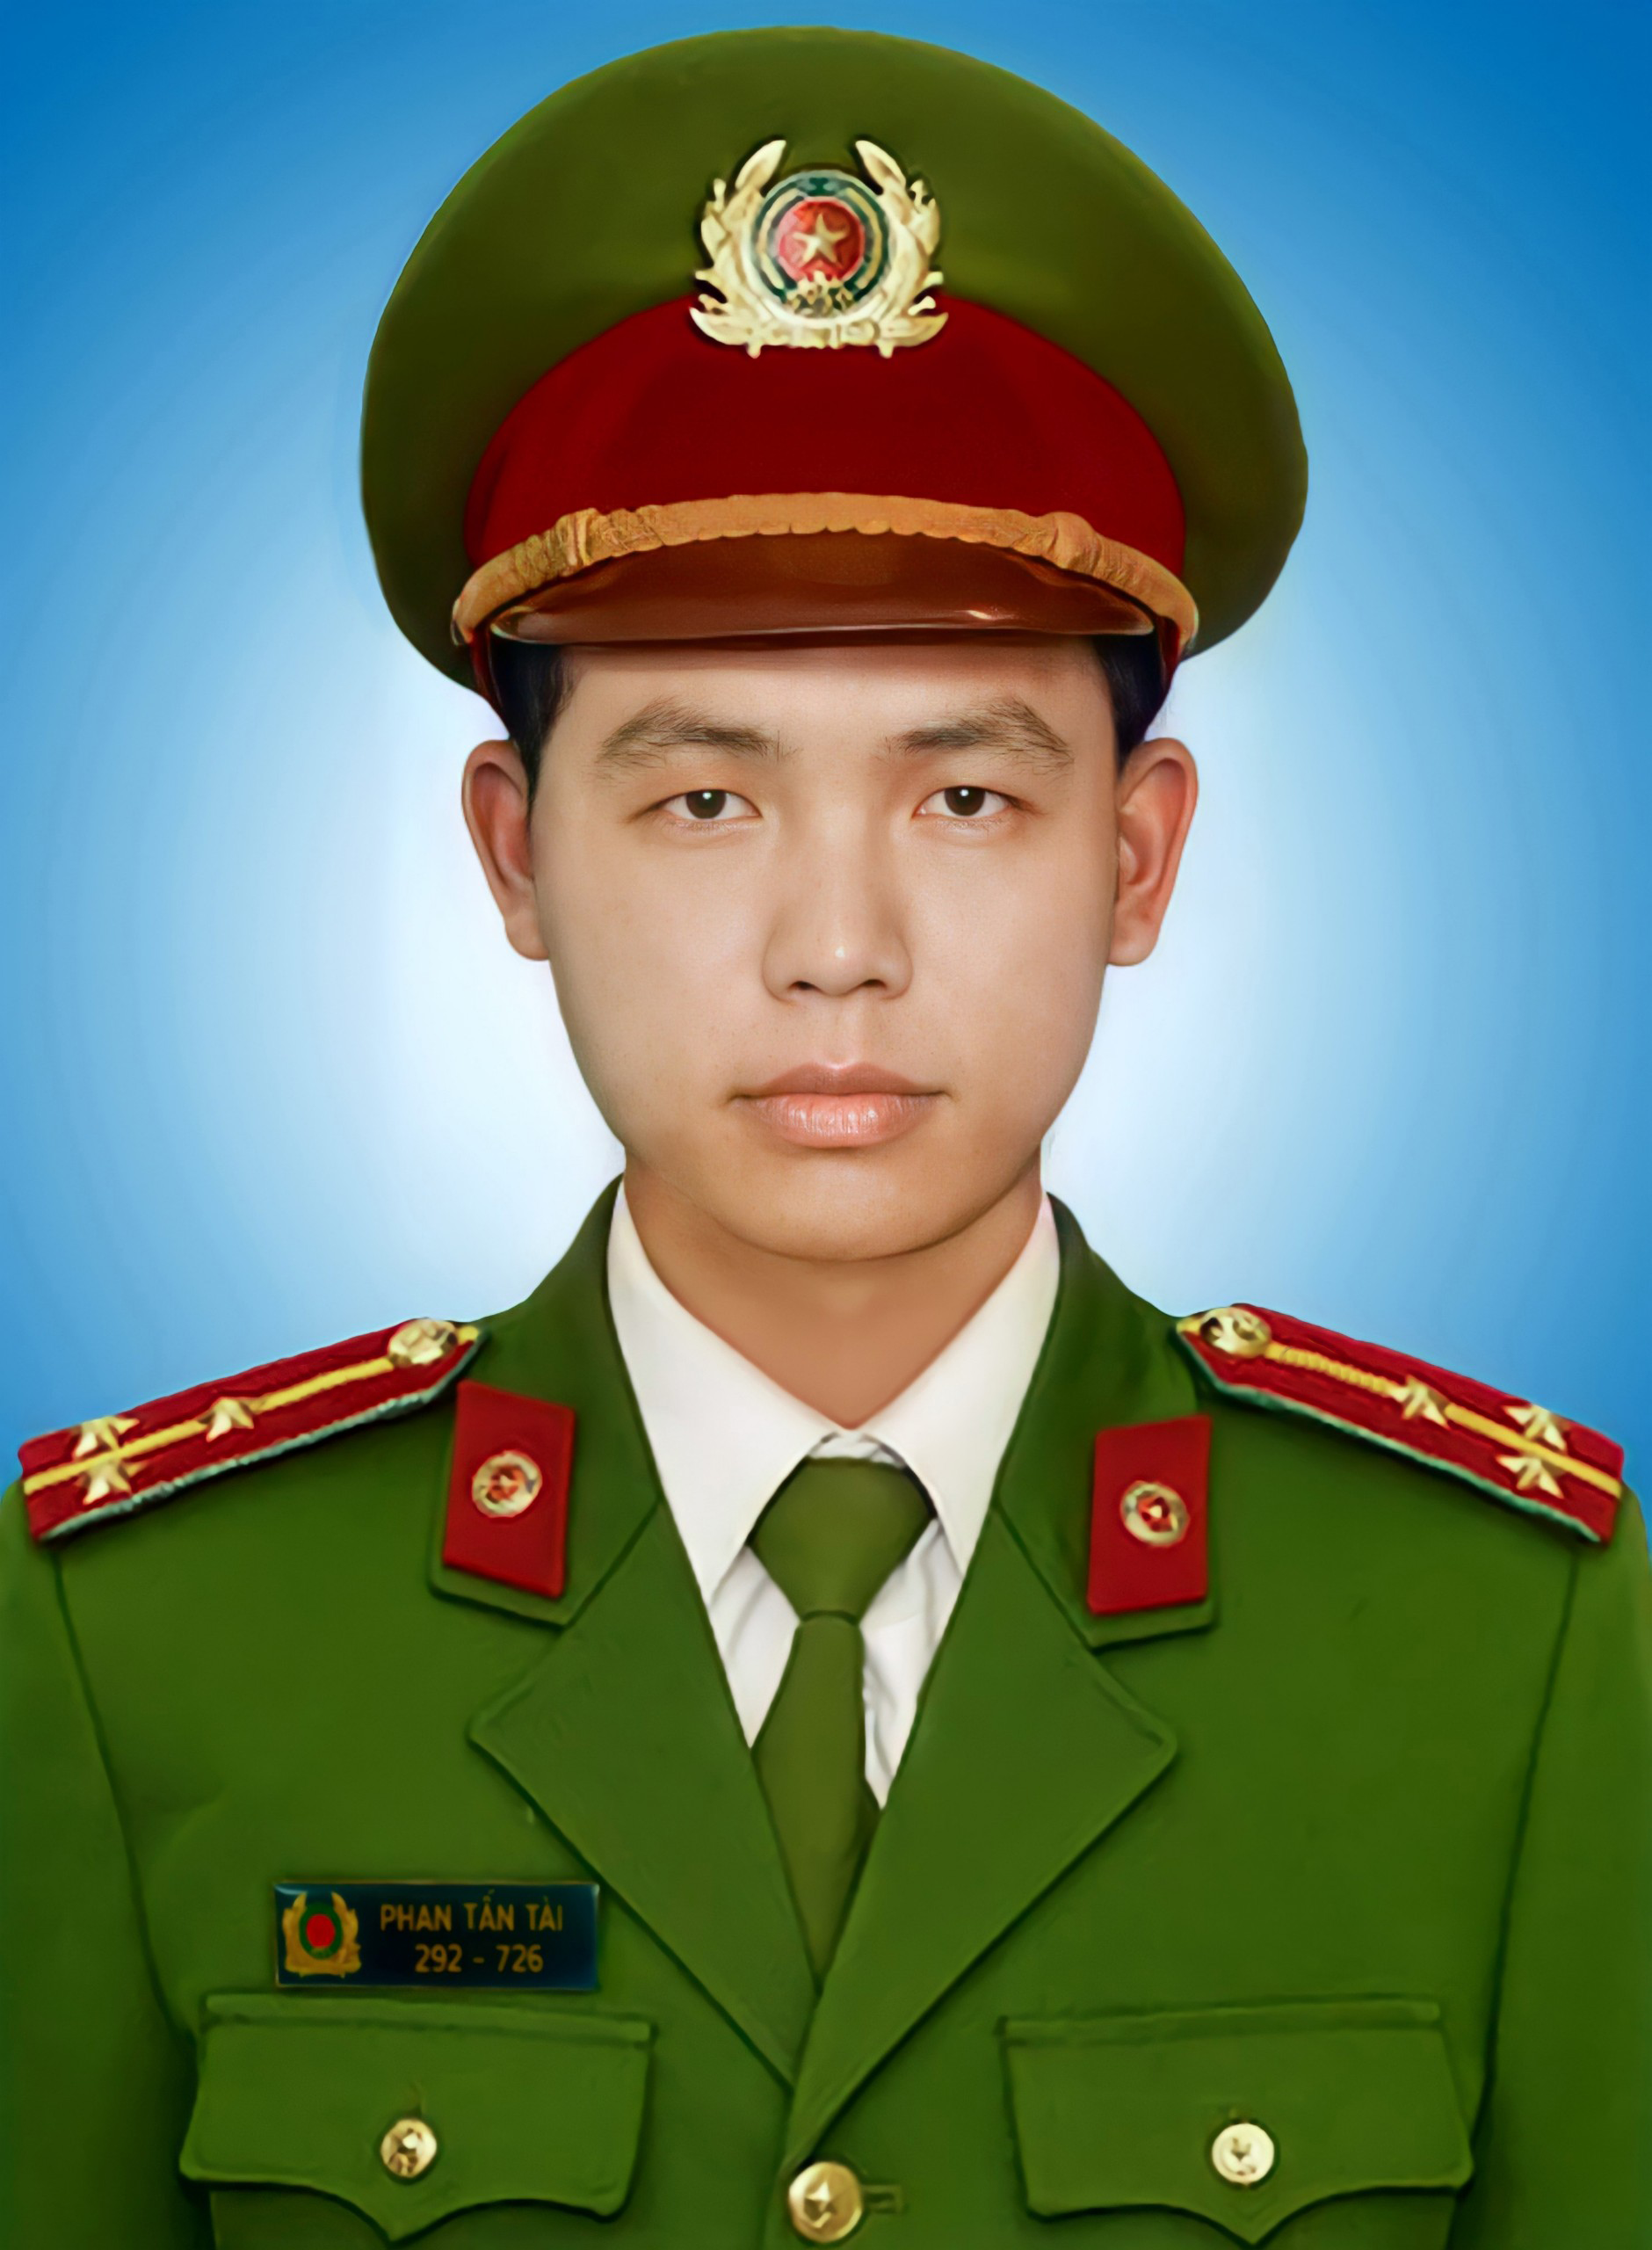 Chủ tịch nước tặng Huân chương Chiến công cho Đại úy Phan Tấn Tài - Ảnh 2.